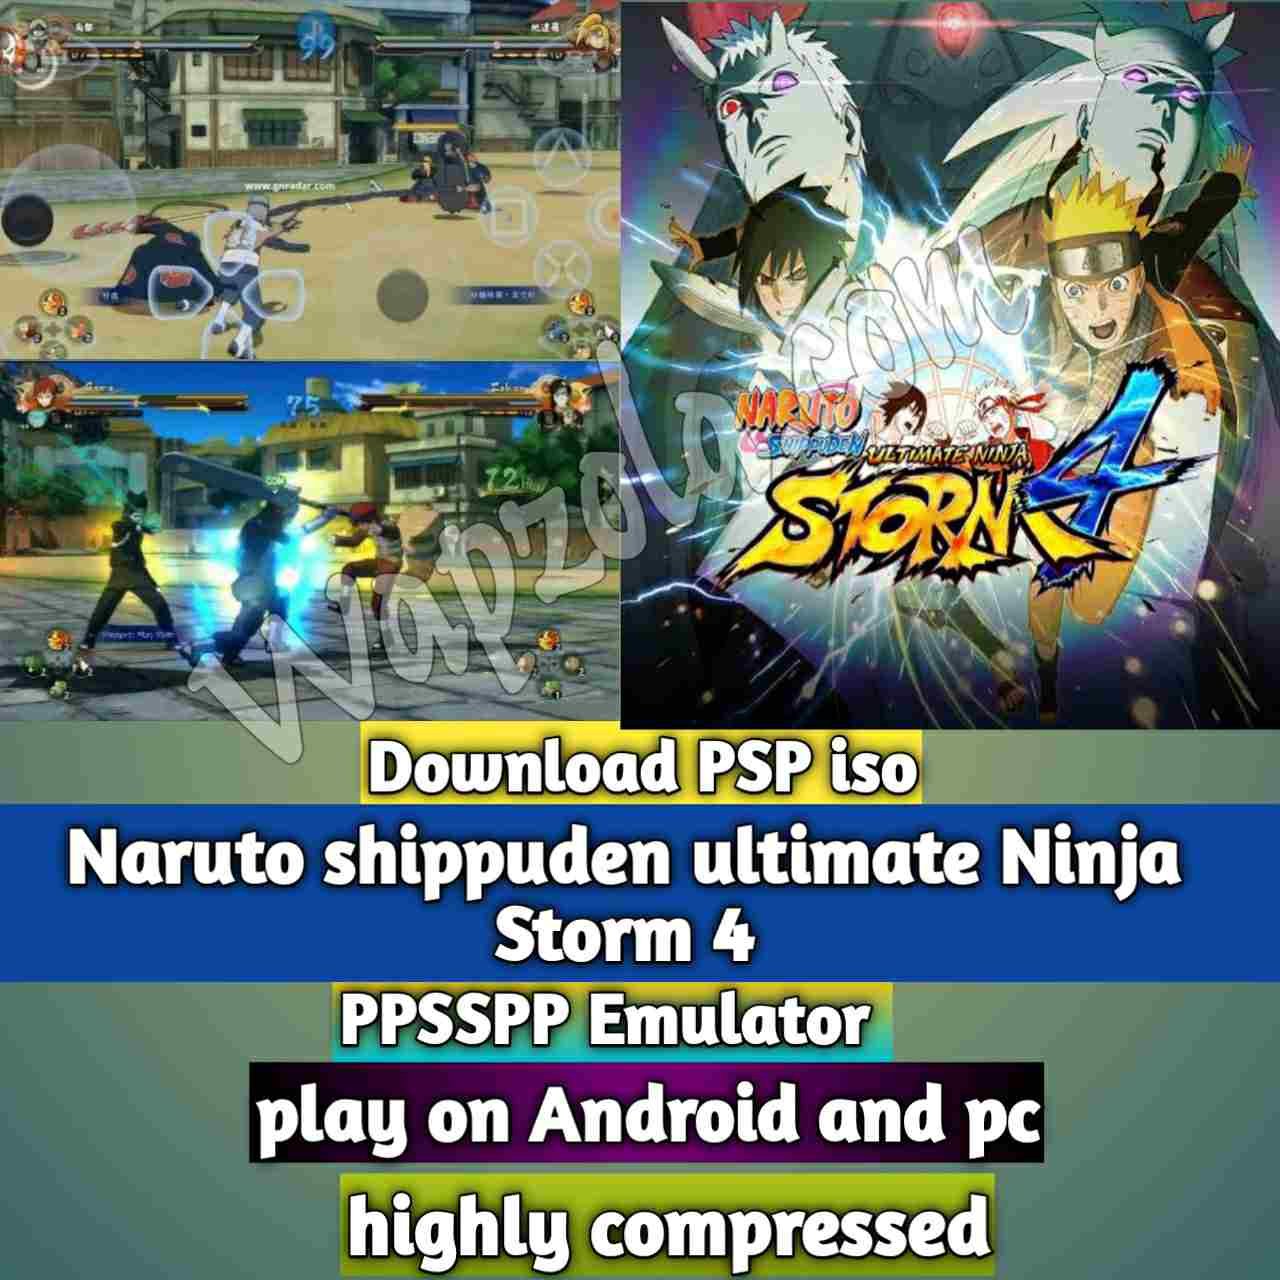 Lee más sobre el artículo [Descargar] Naruto shippuden ultimate Ninja Storm 4 Mod iso ppsspp emulador – PSP APK Iso Rom altamente comprimido 800MB